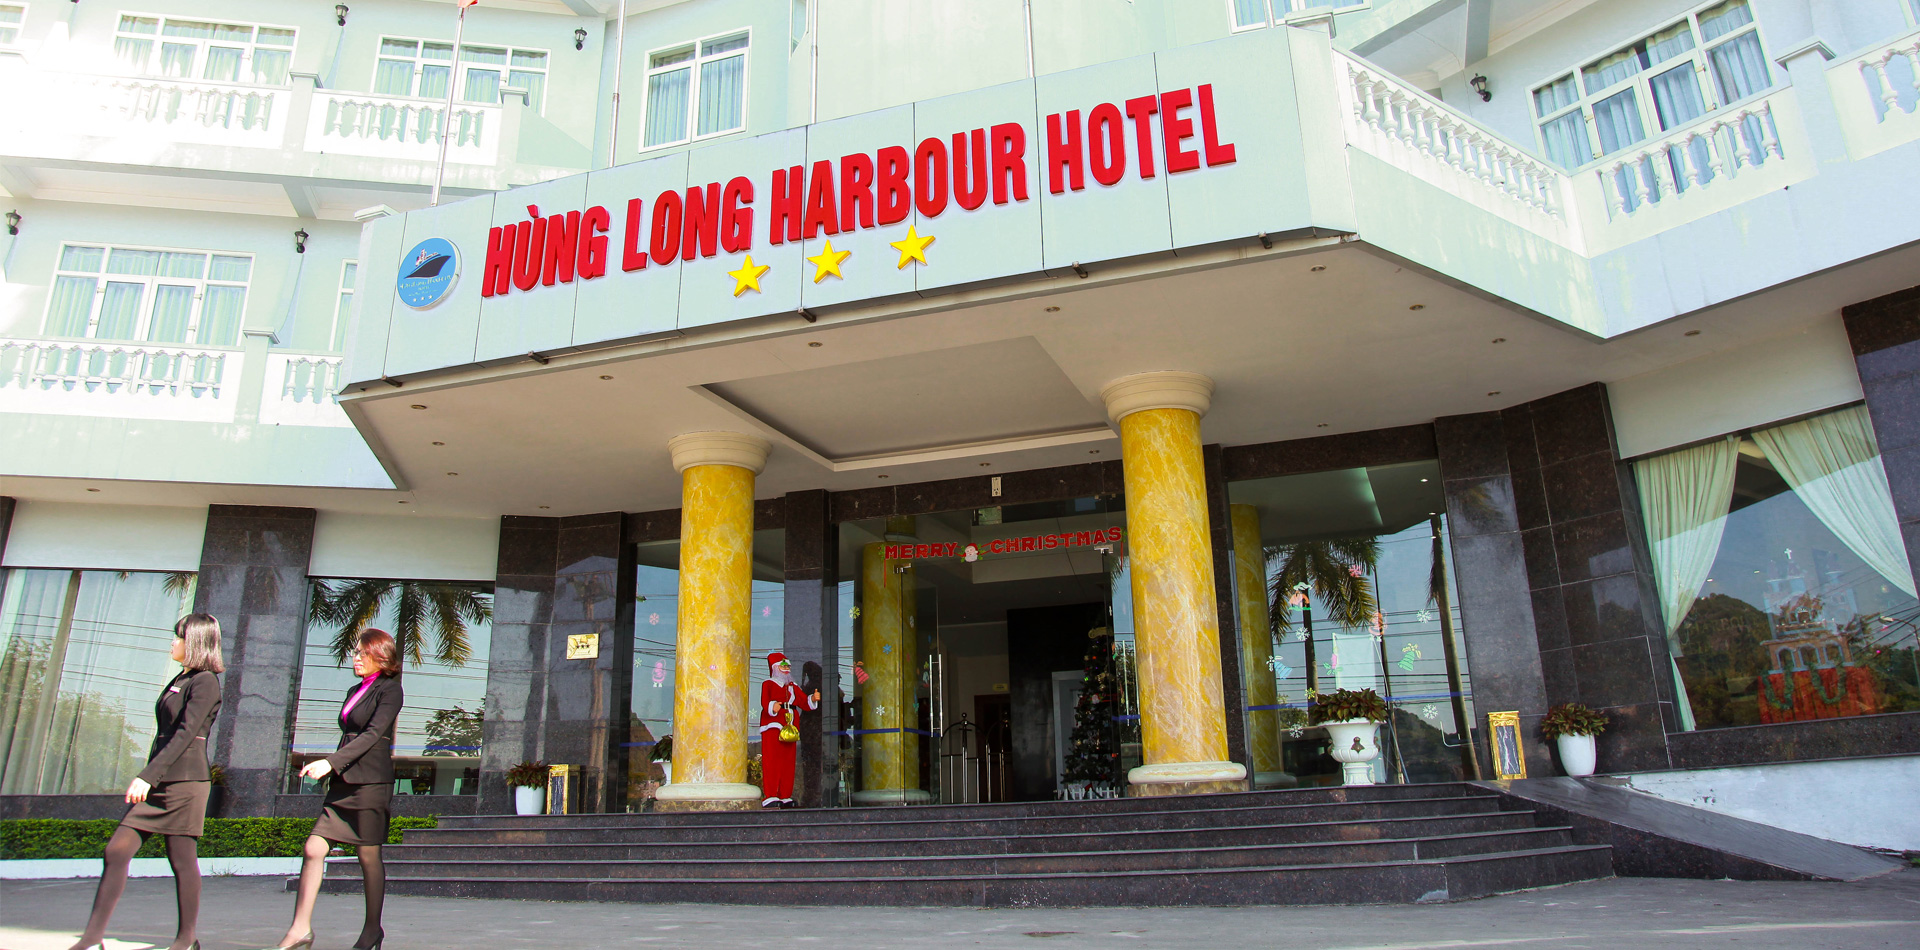 Hung Long Harbour Hotel - nơi lưu trú tuyệt đẹp tại Cát Bà